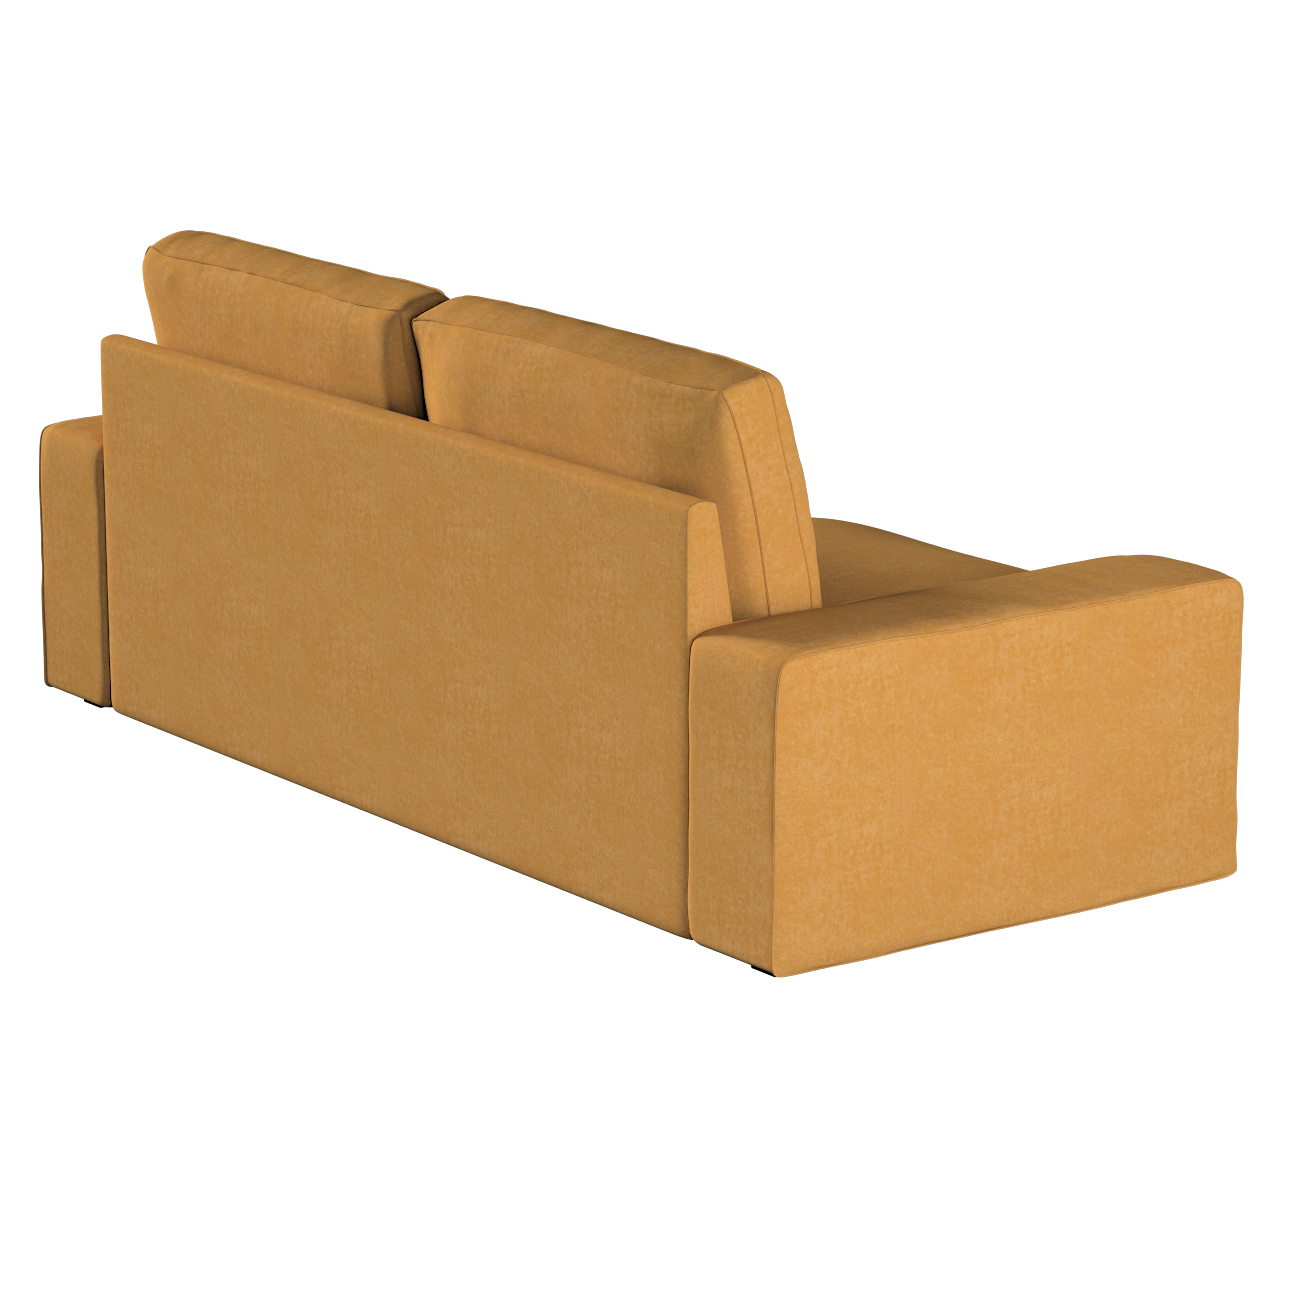 Bezug für Kivik 3-Sitzer Sofa, honiggelb, Bezug für Sofa Kivik 3-Sitzer, Ch günstig online kaufen